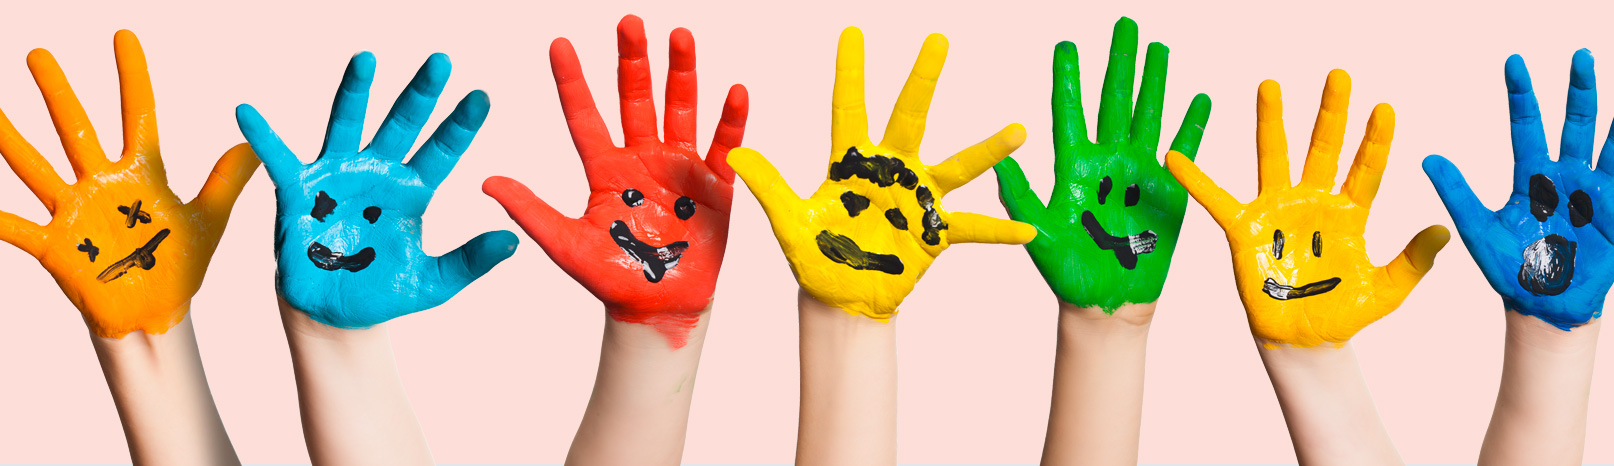 Fotografía de varias manos infantiles pintadas de colores